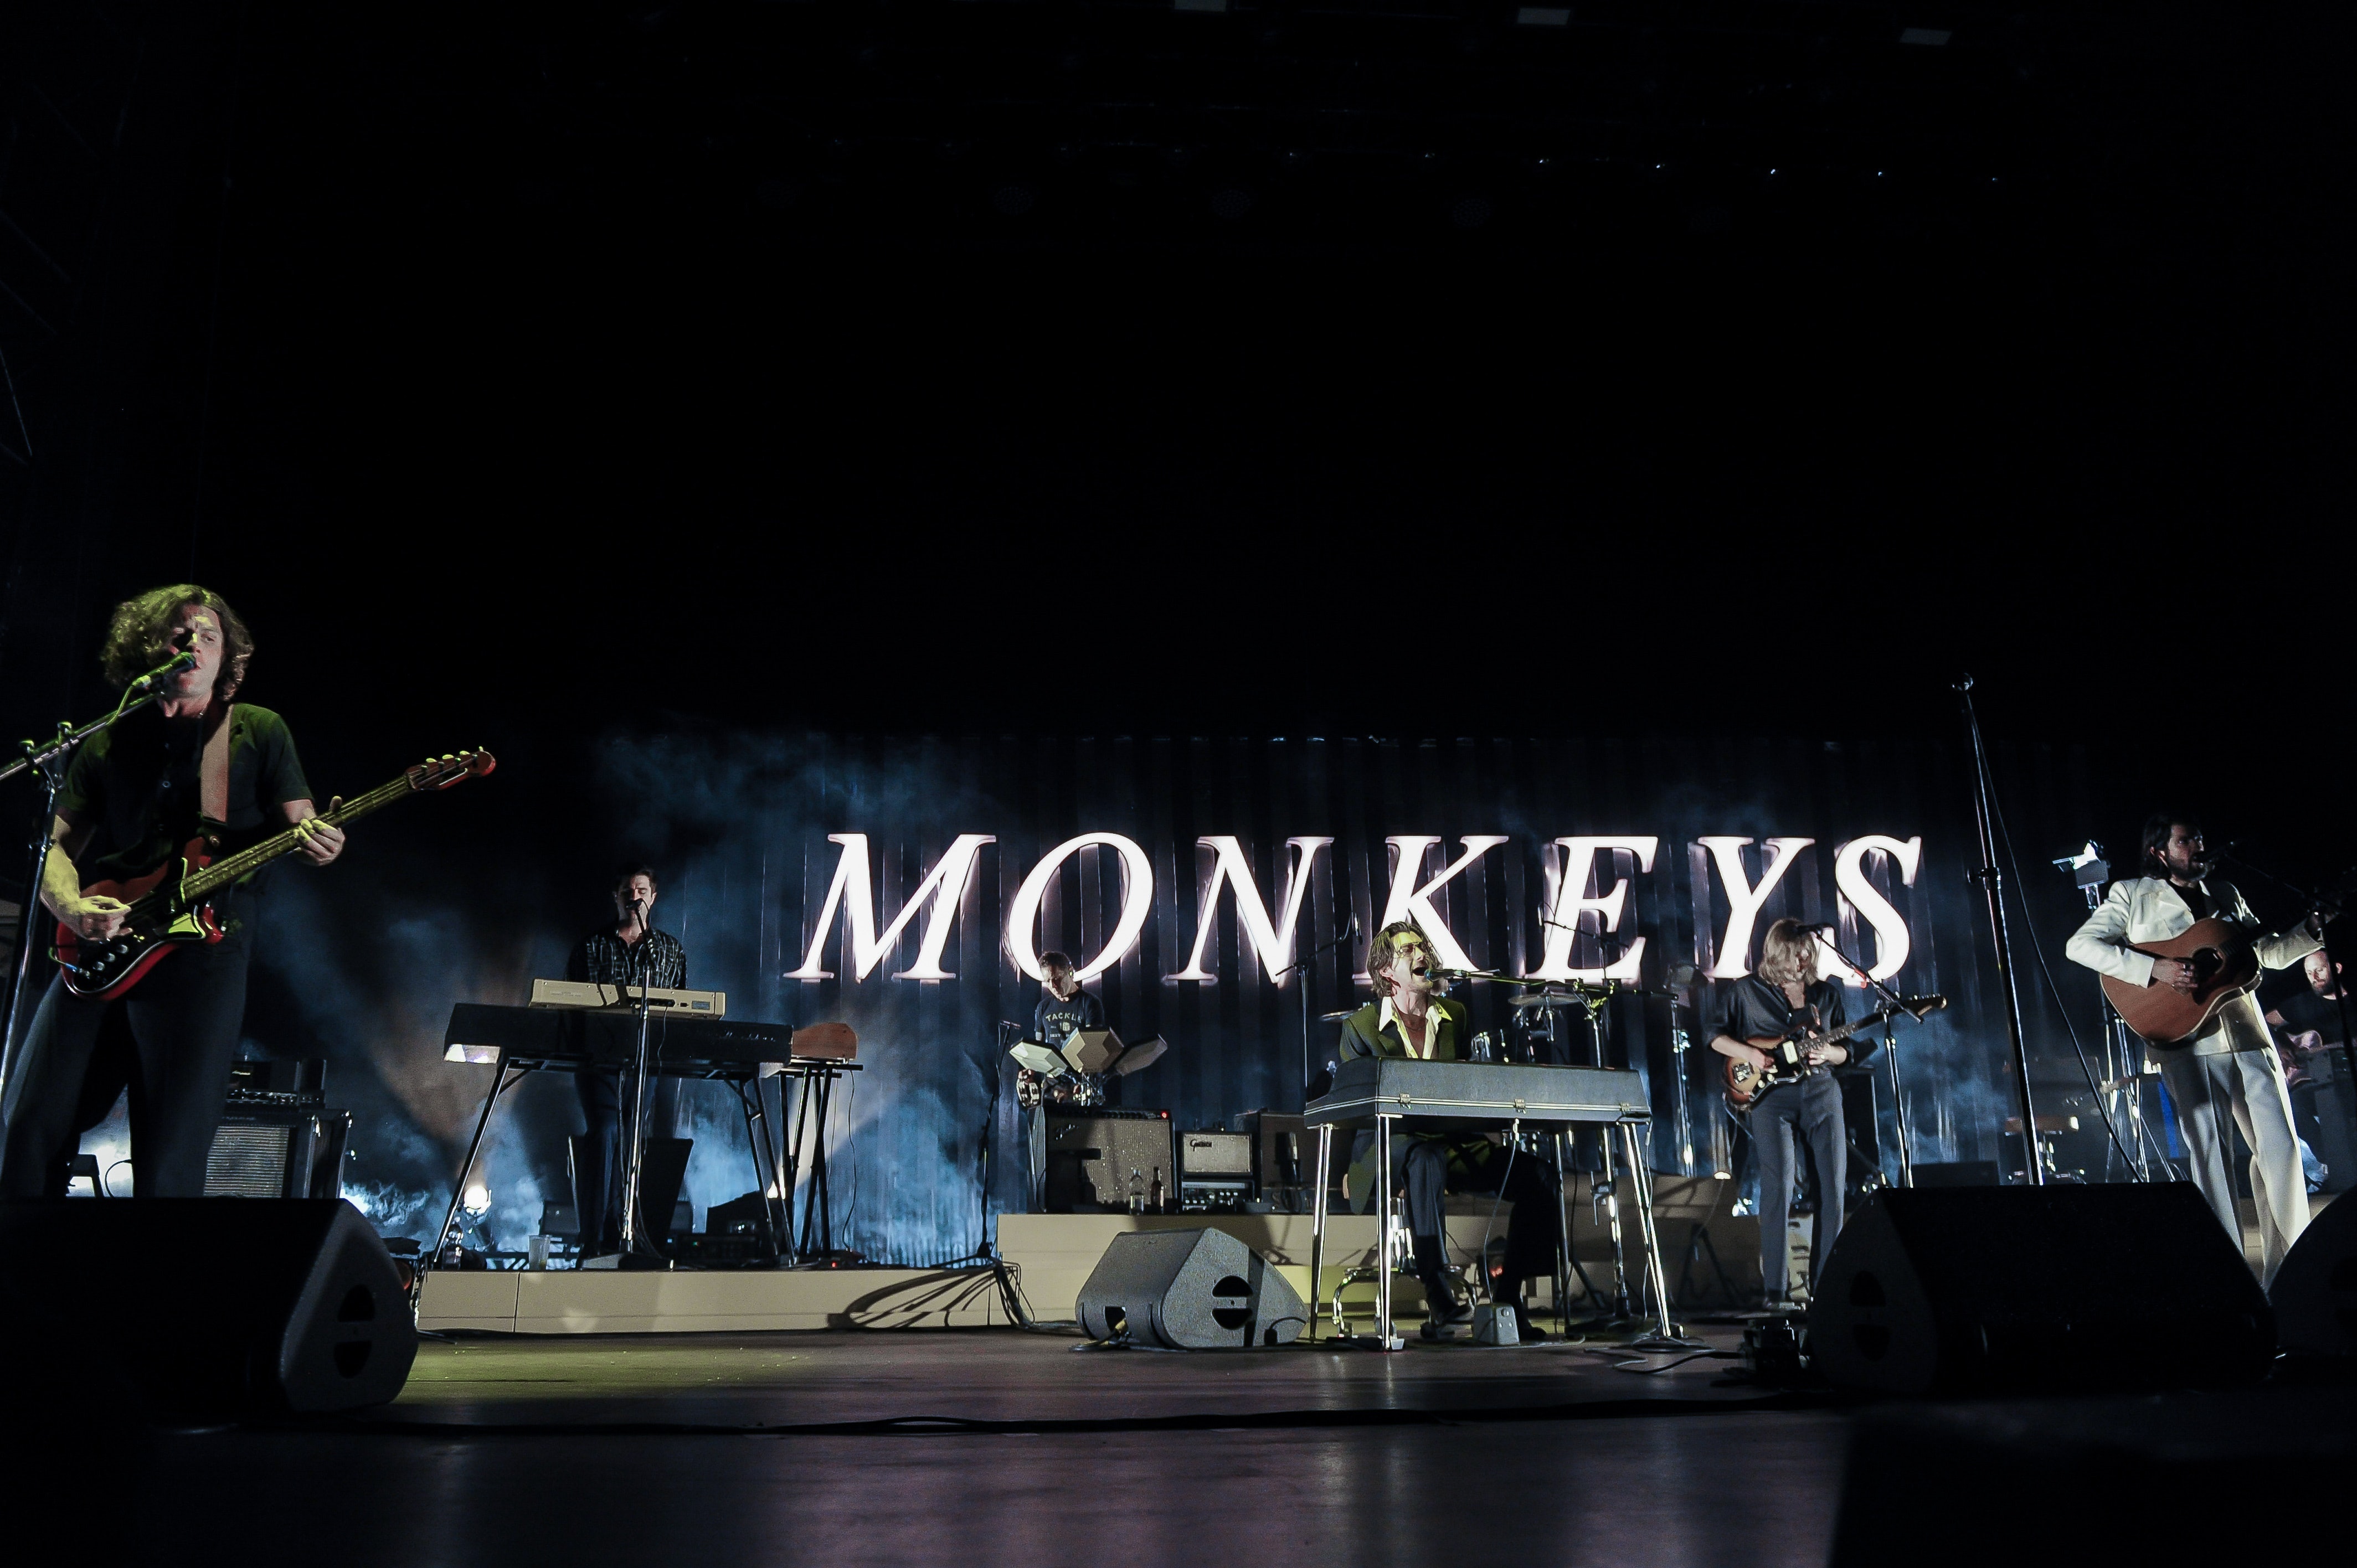 ในที่สุด Arctic Monkeys ก็ประกาศการแสดง 2 การแสดงในสหราชอาณาจักรในปี 2022